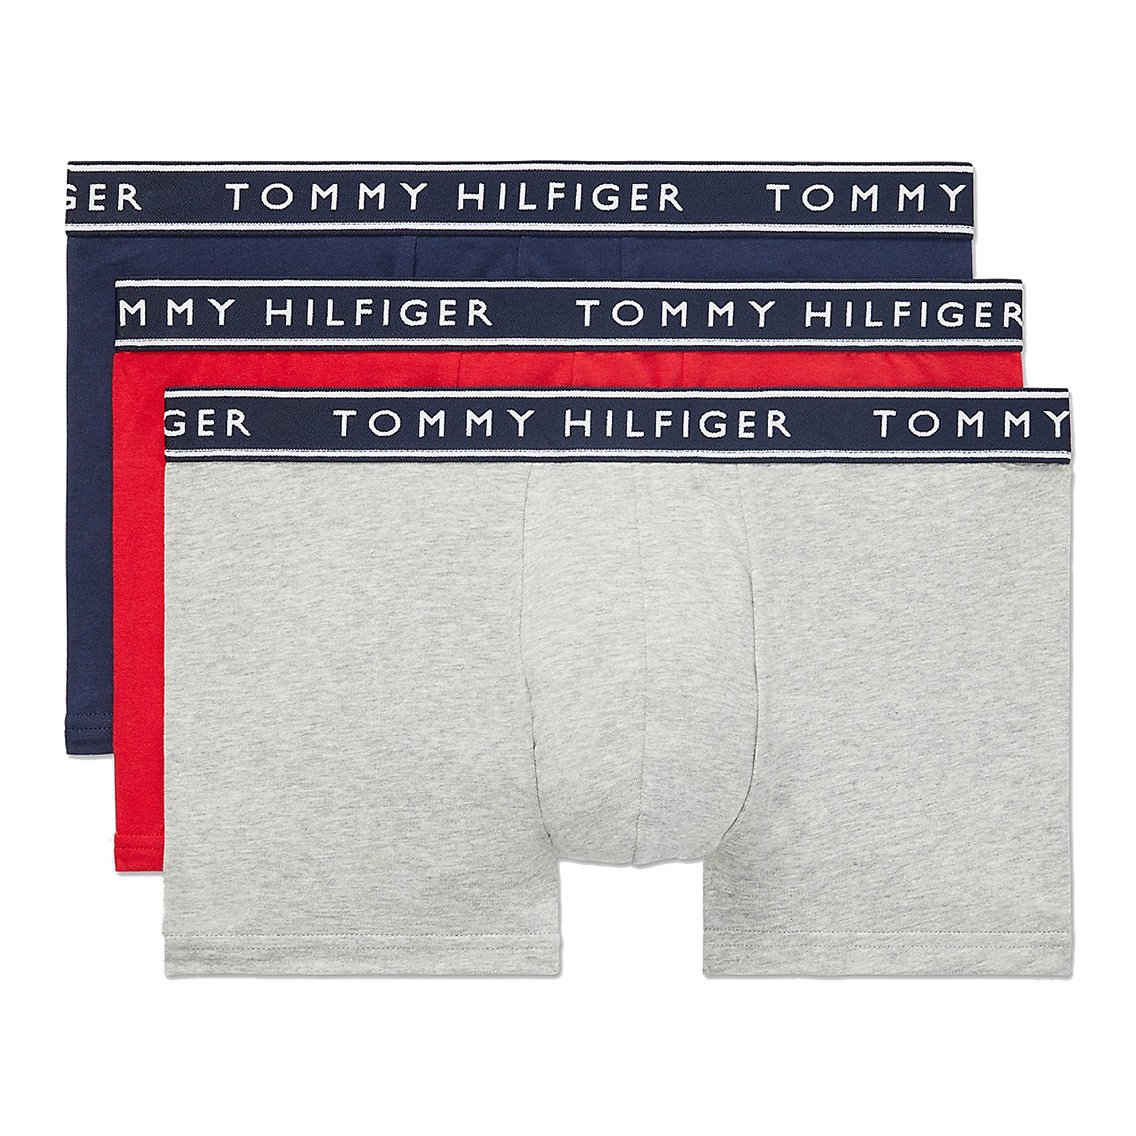 TOMMY HILFIGER(トミーヒルフィガー)[09T4225-608]:ボクサーパンツ